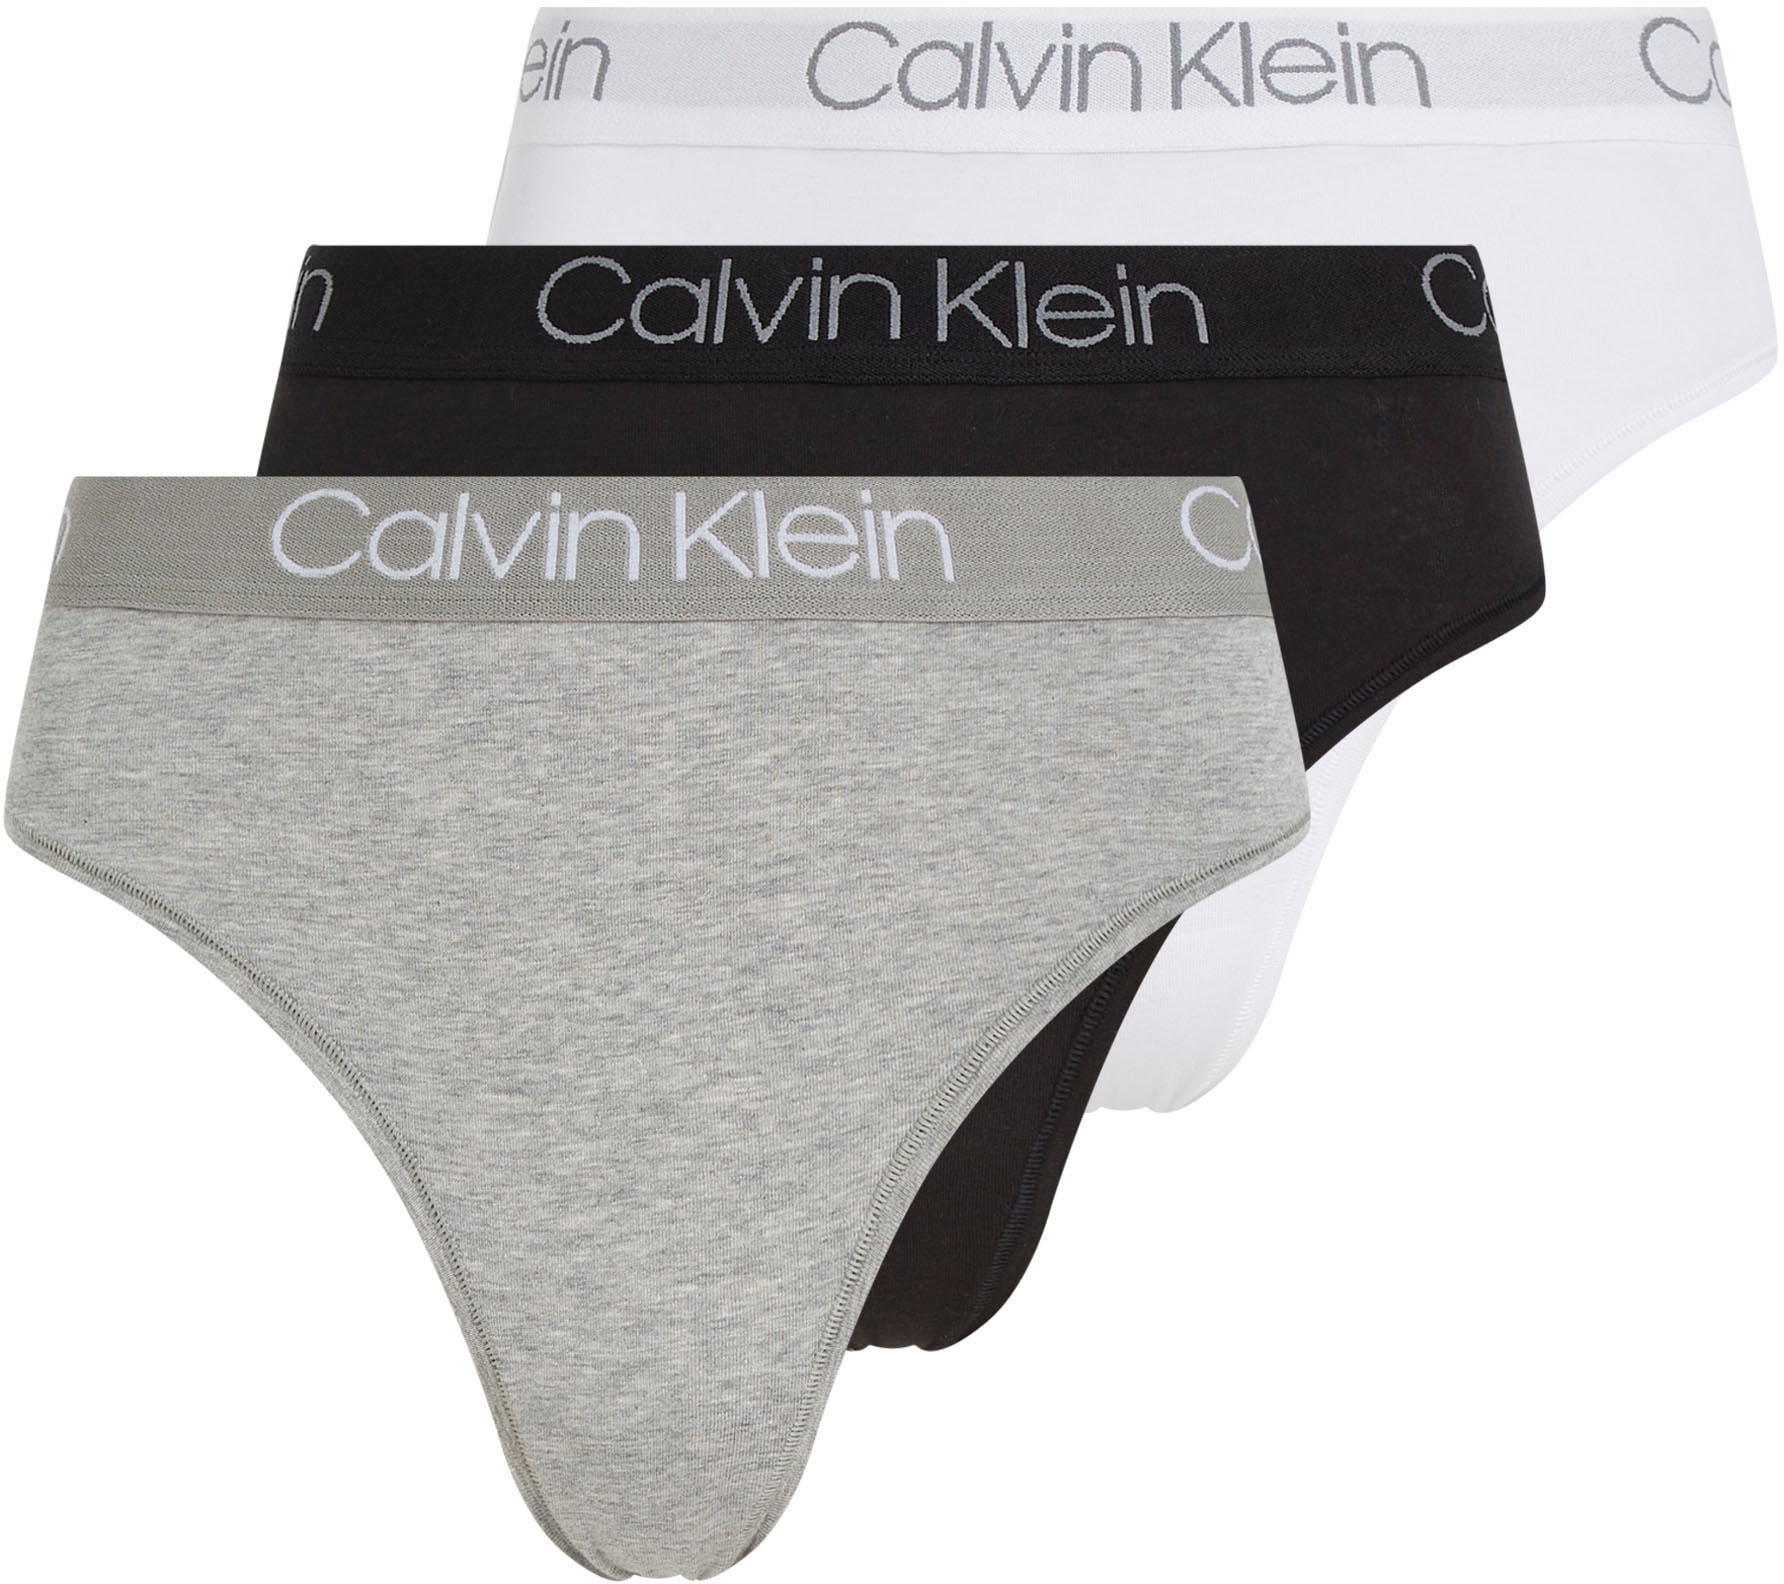 Calvin Klein Cotton Stretch Hip Briefs 3-Pack Blue/Coral/Topaz